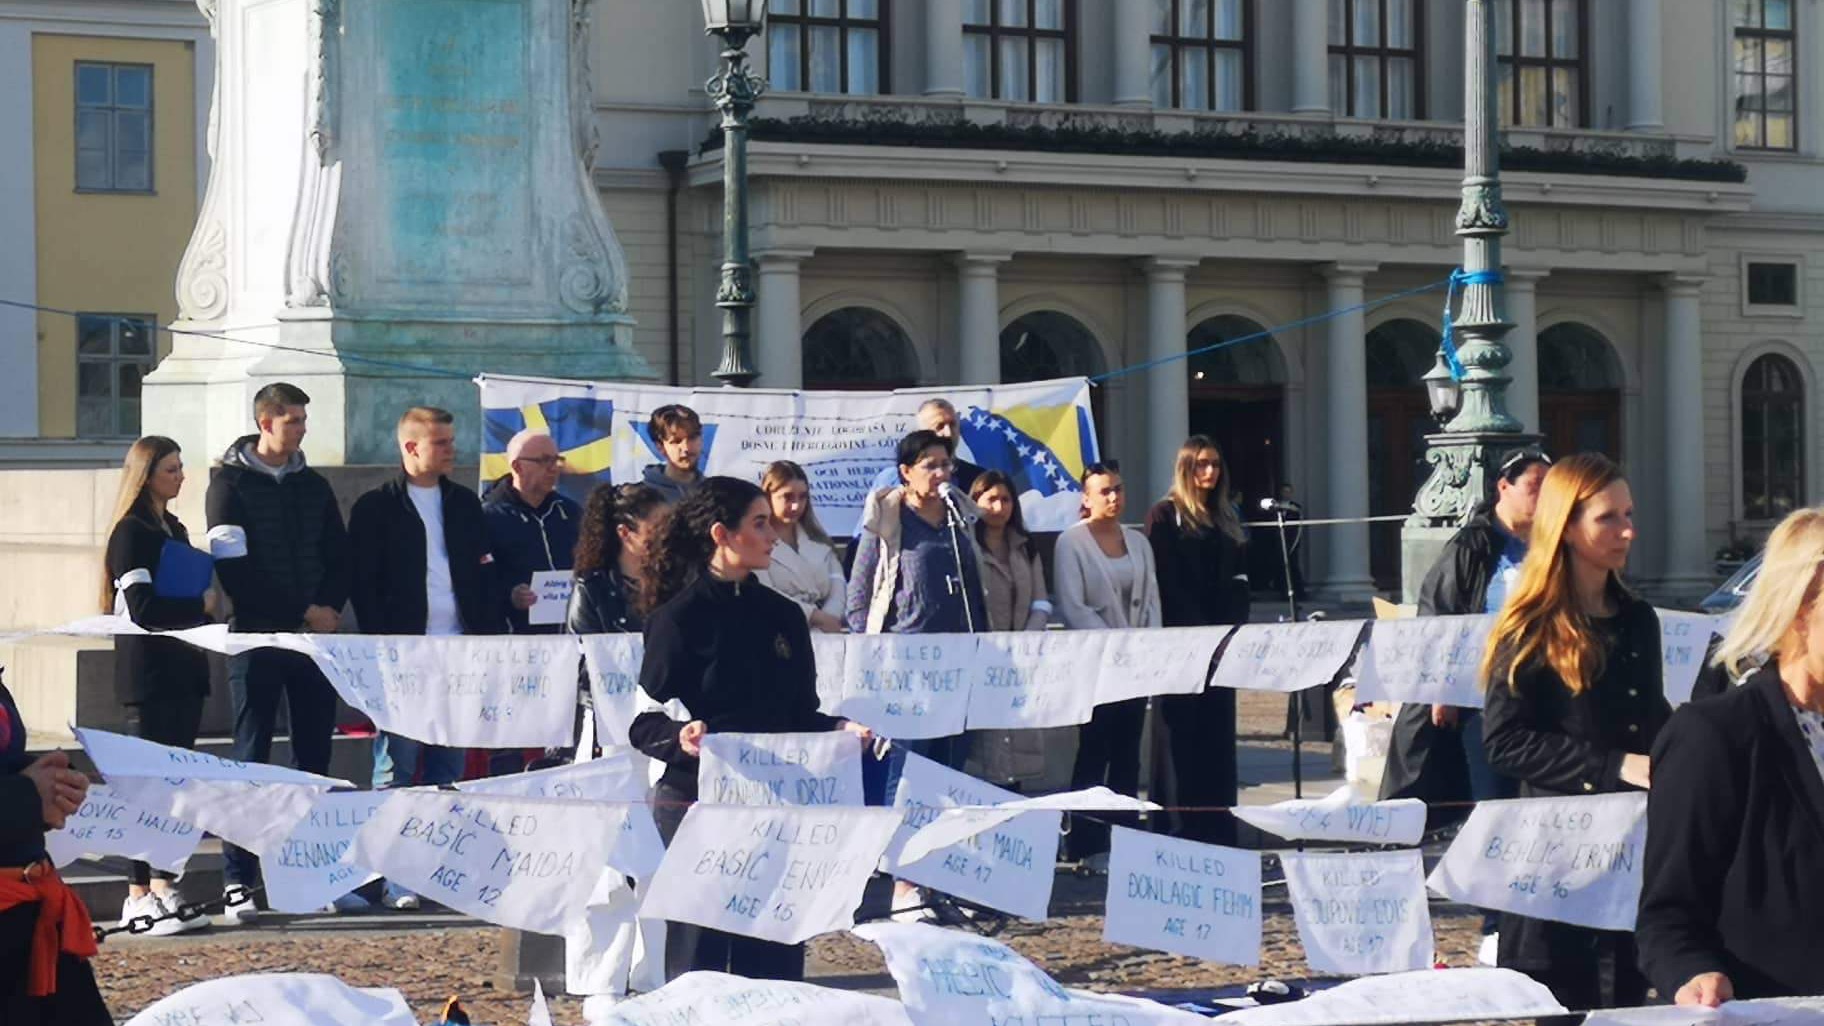 Dan bijelih traka obilježen u Geteborgu, pod motom "Nikada nikome bijele trake"